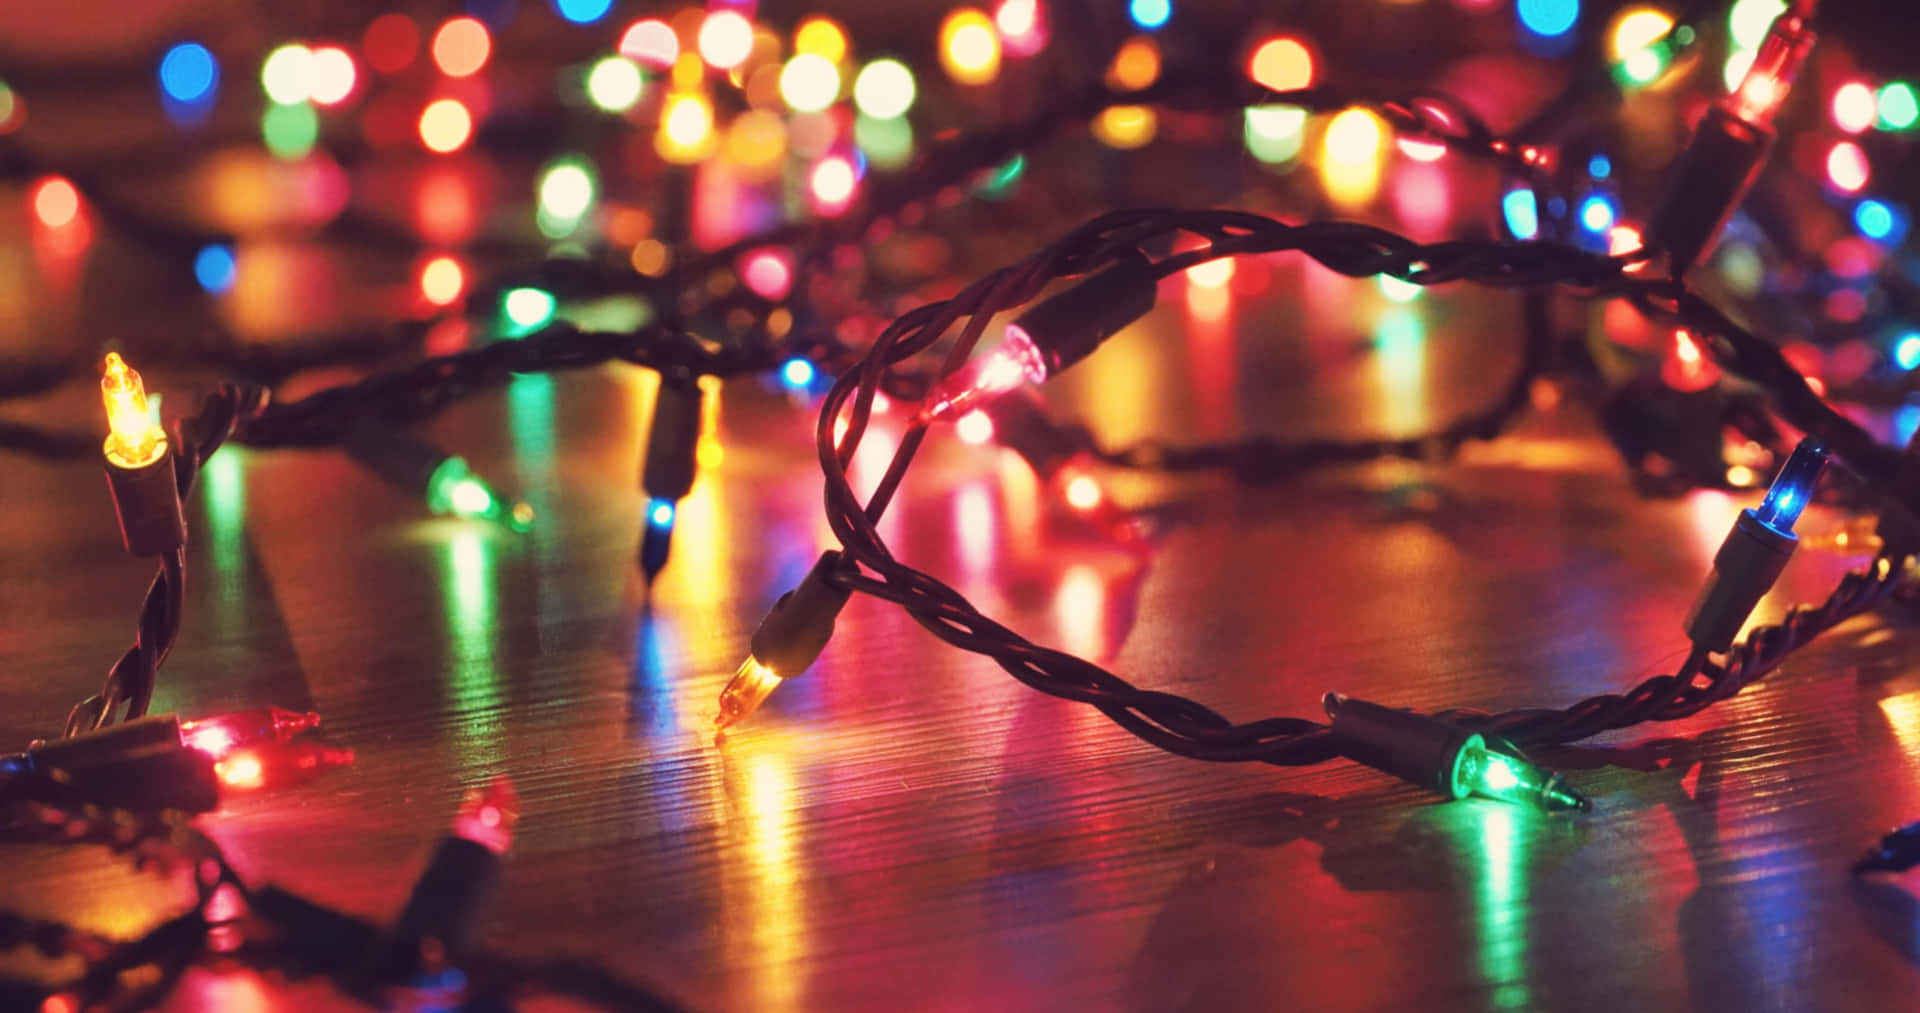 Unacelebración Festiva De Navidad, Completa Con Luces.